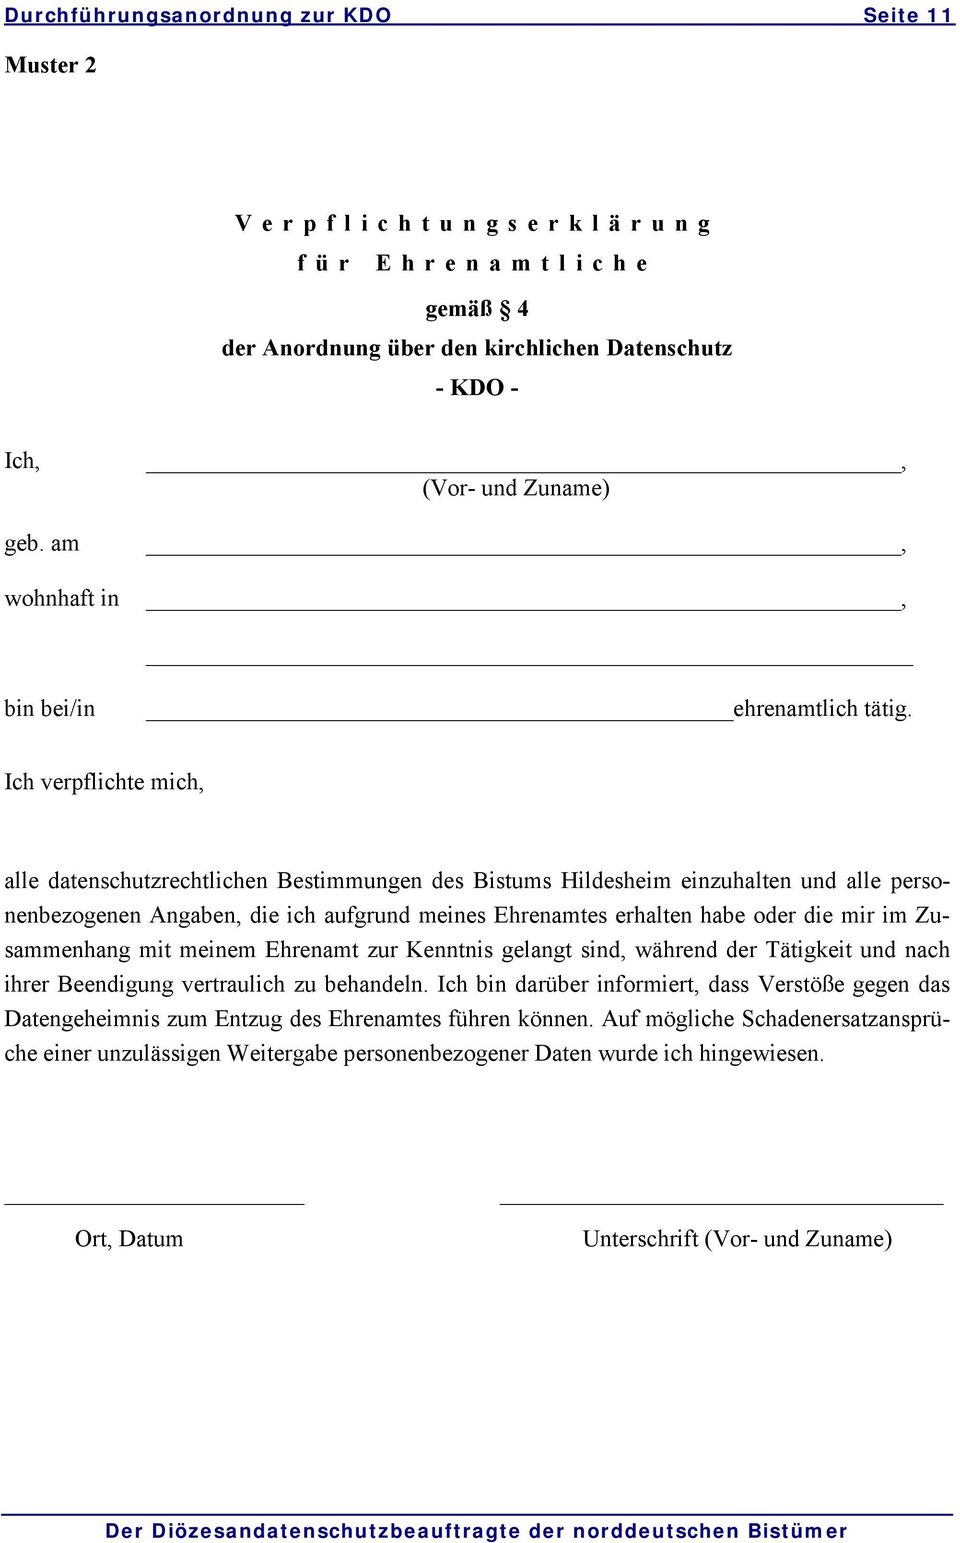 Ich verpflichte mich, alle datenschutzrechtlichen Bestimmungen des Bistums Hildesheim einzuhalten und alle personenbezogenen Angaben, die ich aufgrund meines Ehrenamtes erhalten habe oder die mir im